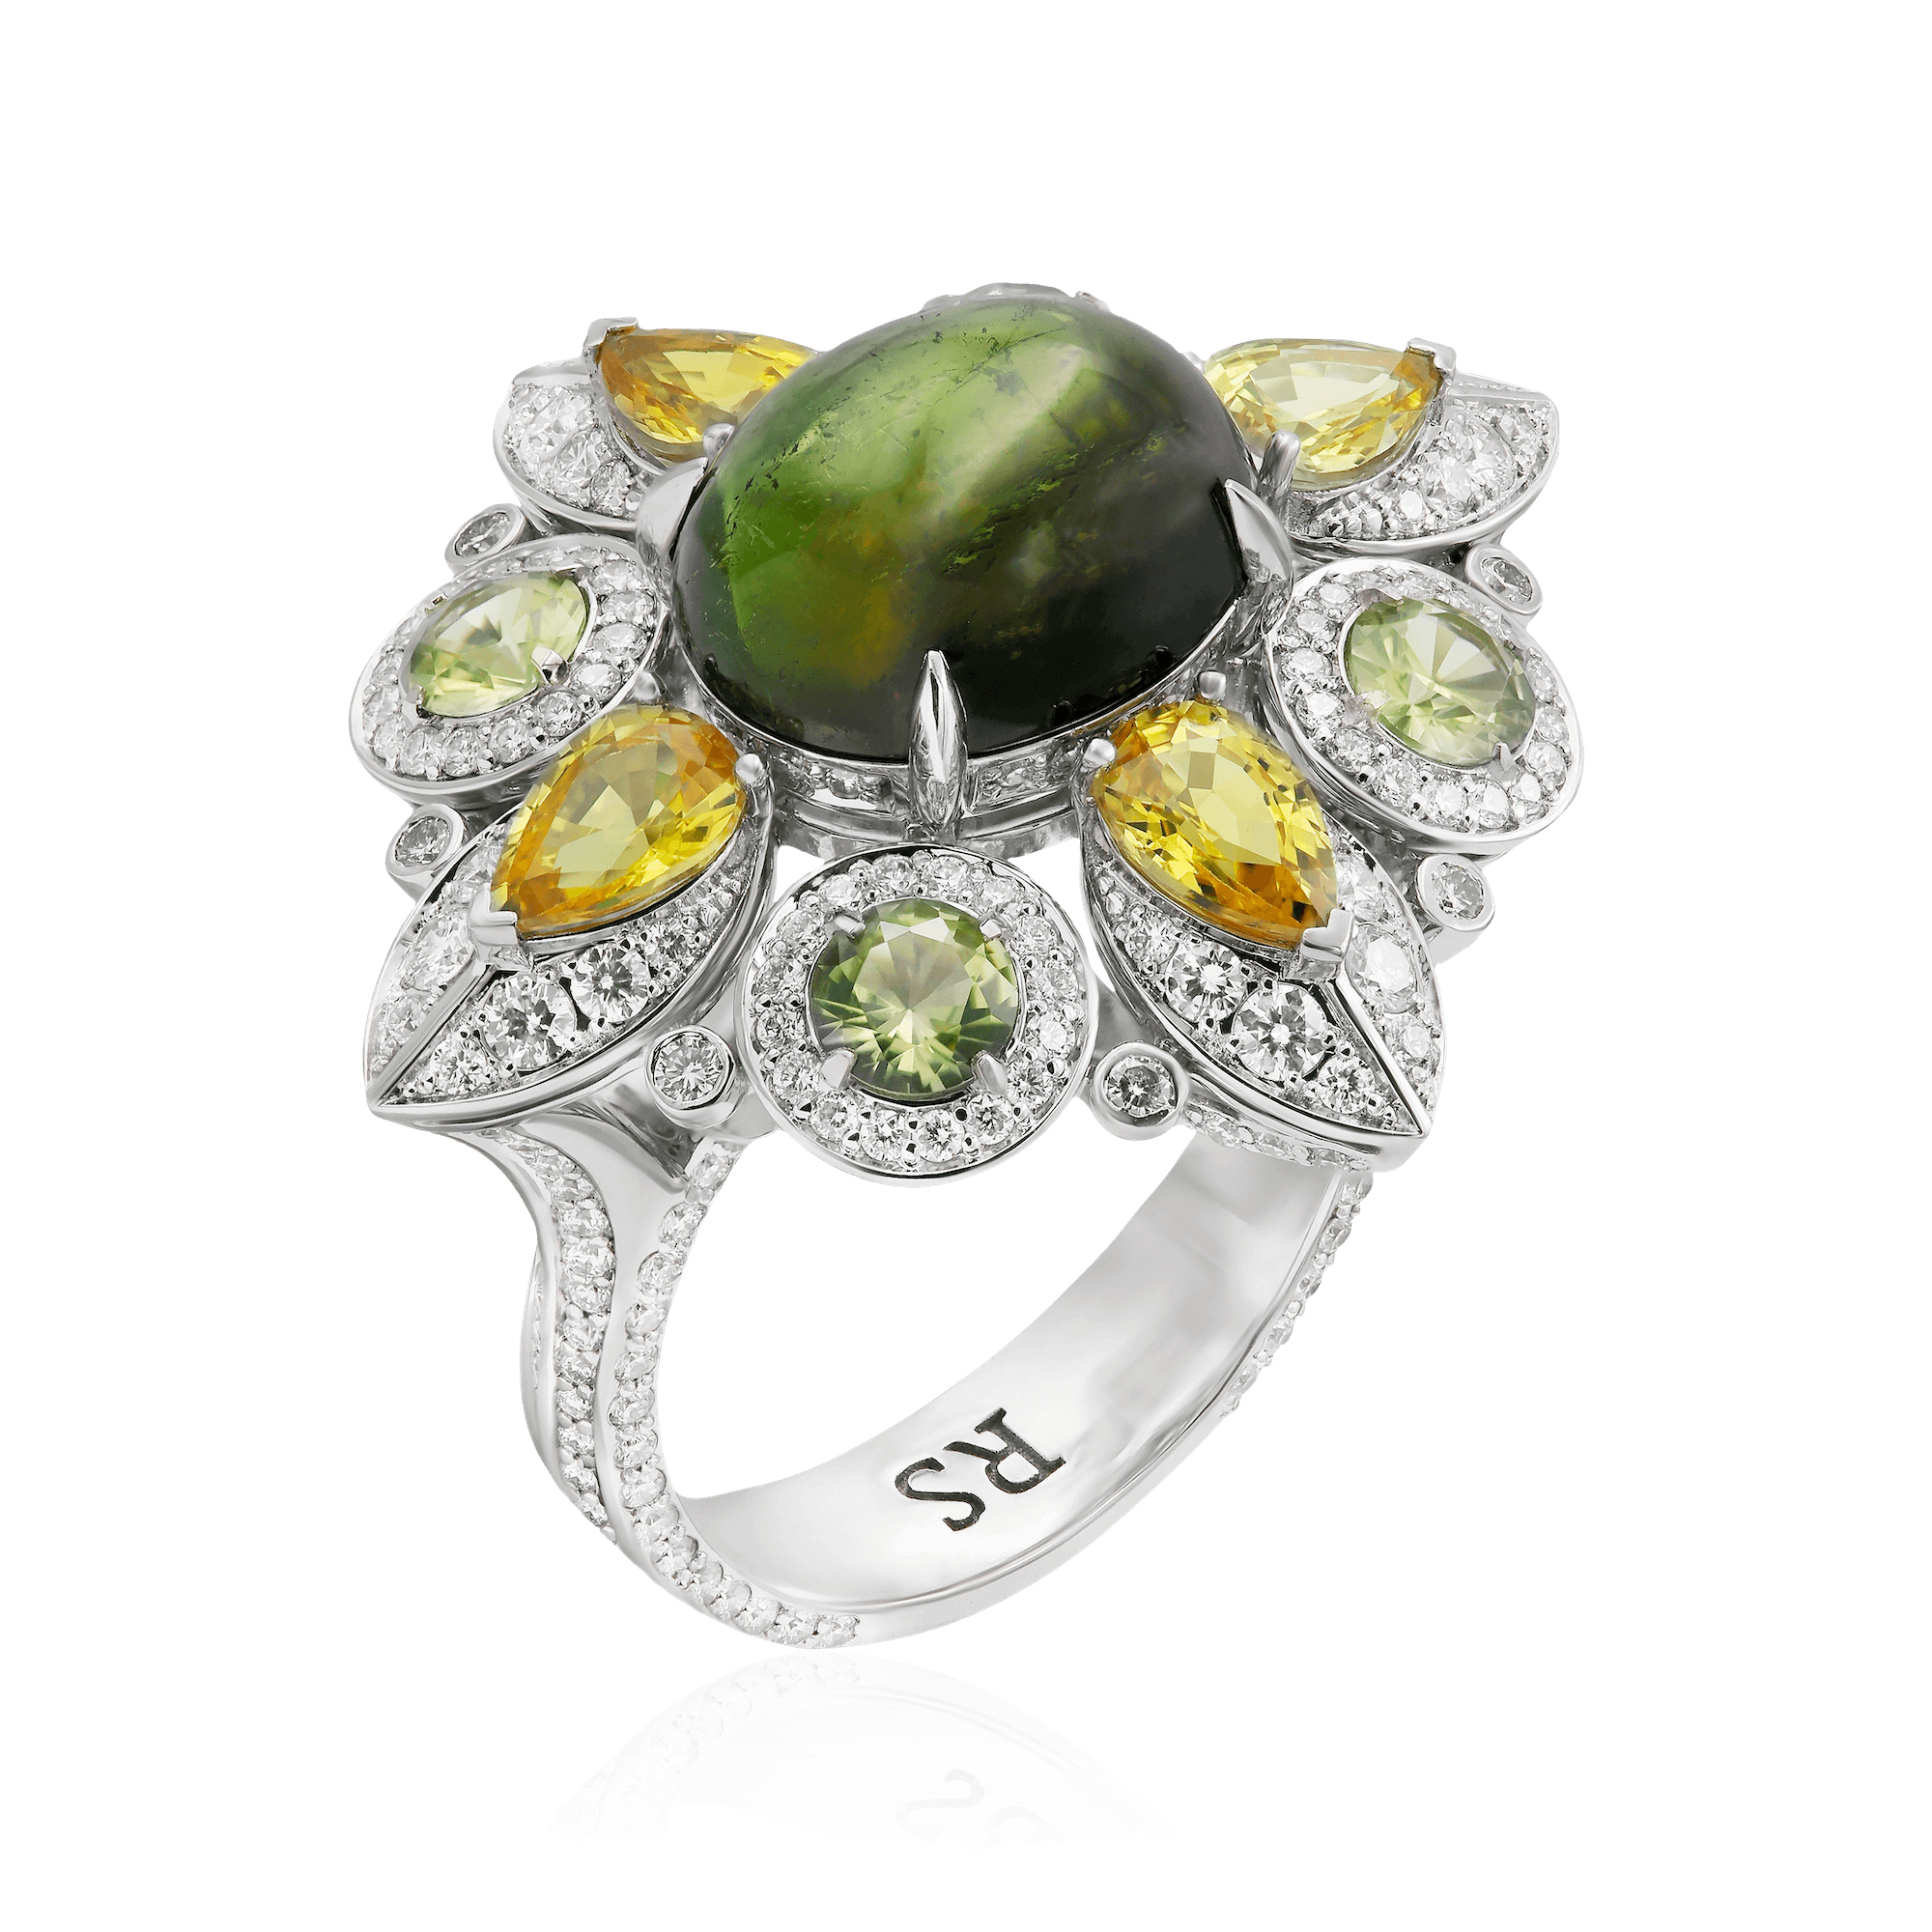 Кольцо в виде цветка с сапфиром, бриллиантами, хризолитом, турмалином из белого золота 750 пробы, фото № 1